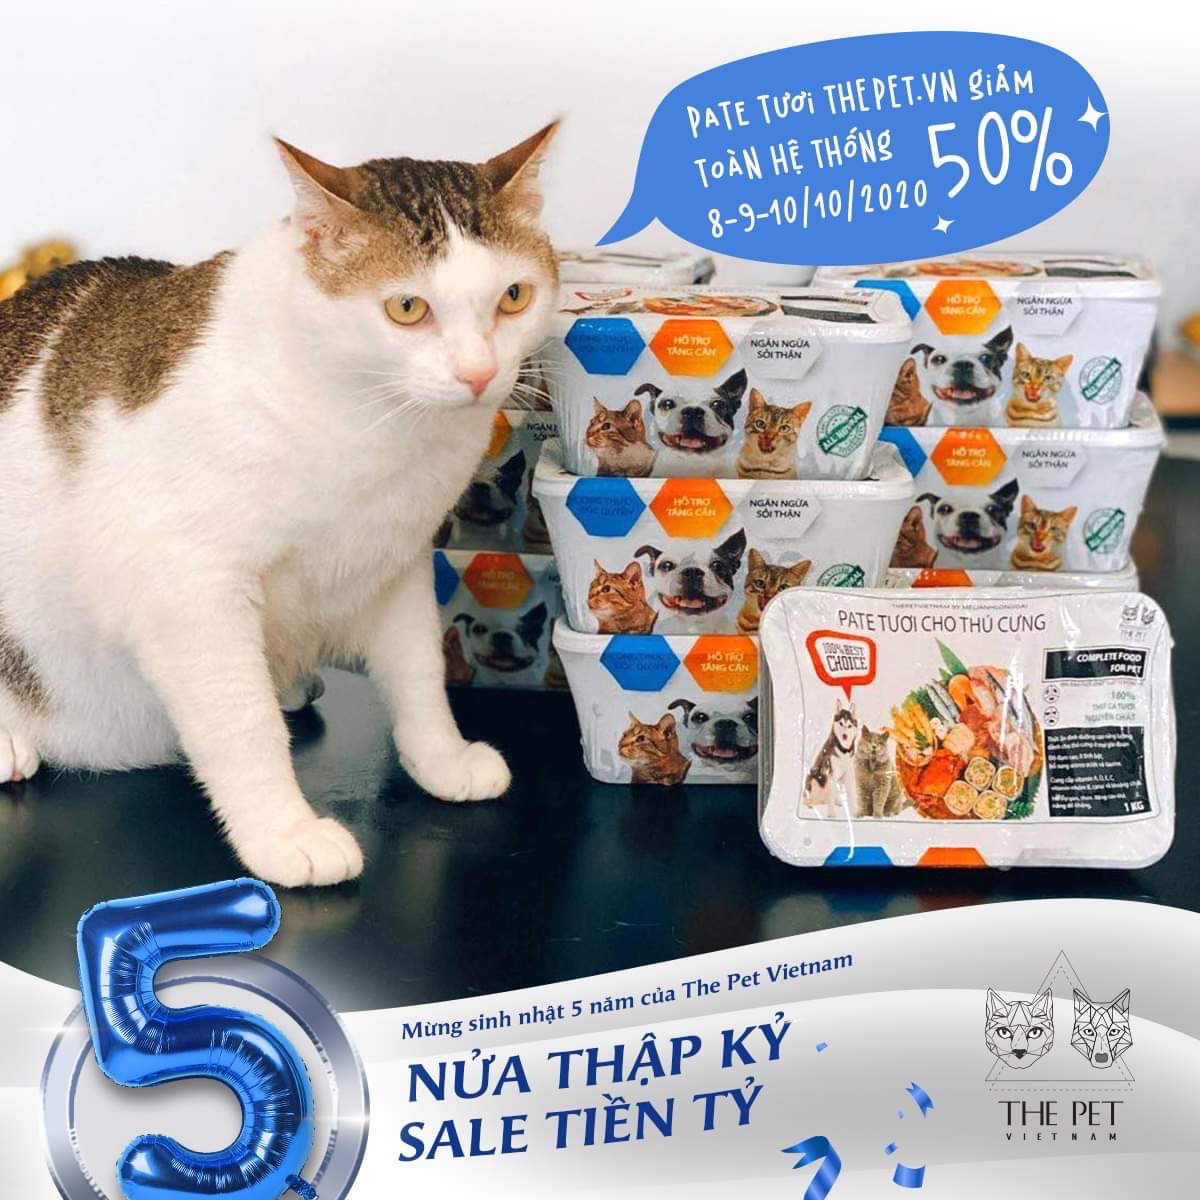 Tri ân tưng bừng, mừng sinh nhật 5 năm cùng thức ăn chó mèo The Pet Việt Nam - Ảnh 1.